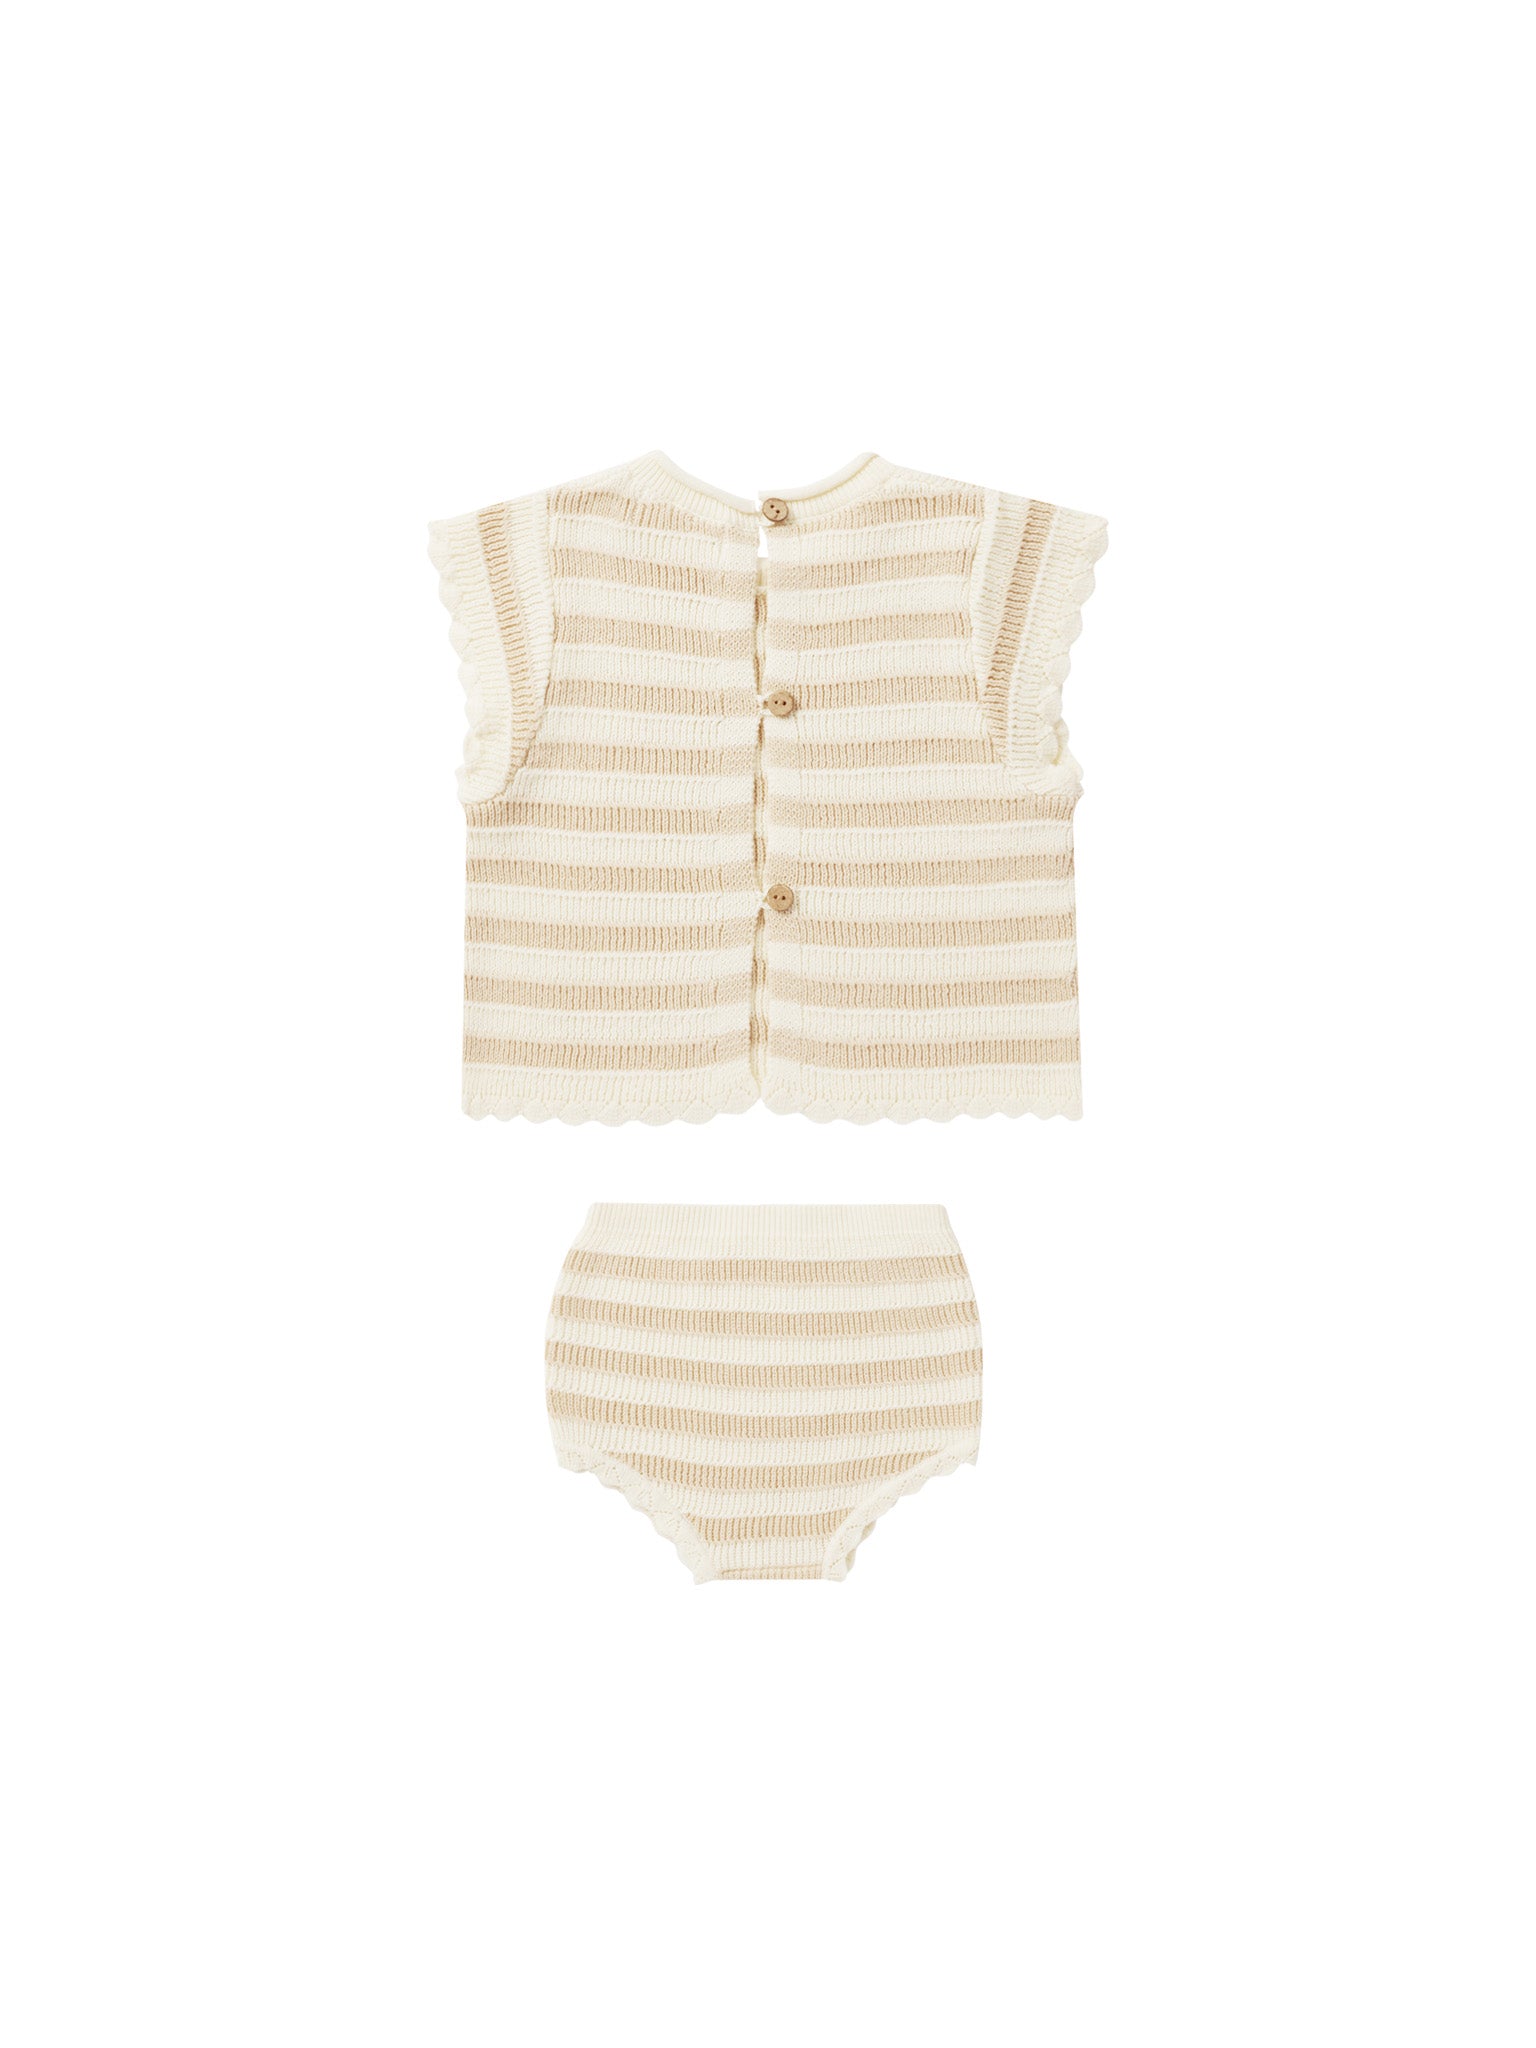 Scallop Knit Baby Set - Sand Stripe - Twinkle Twinkle Little One